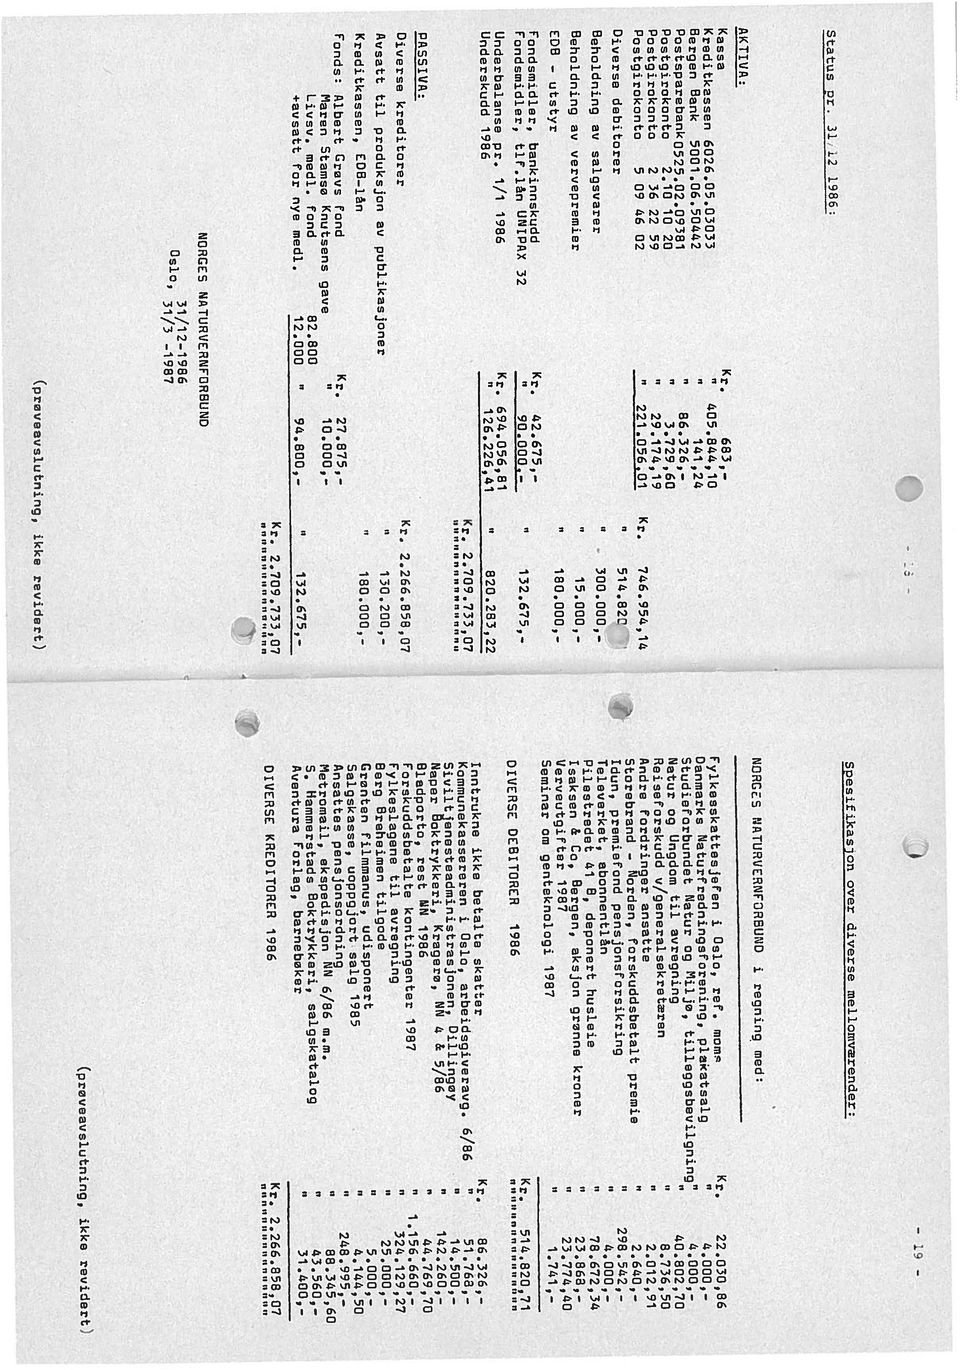 i/i 1986 Beho1cjnjru salgarer Diverse kreditorer Avsatt til produksjon publikasjoner F1aren Stamso Knutsens ge Kreditkassen, ED6 lån +satt for nye medl. t (prøveslutning, ikke revidert) 405.844,10 3.